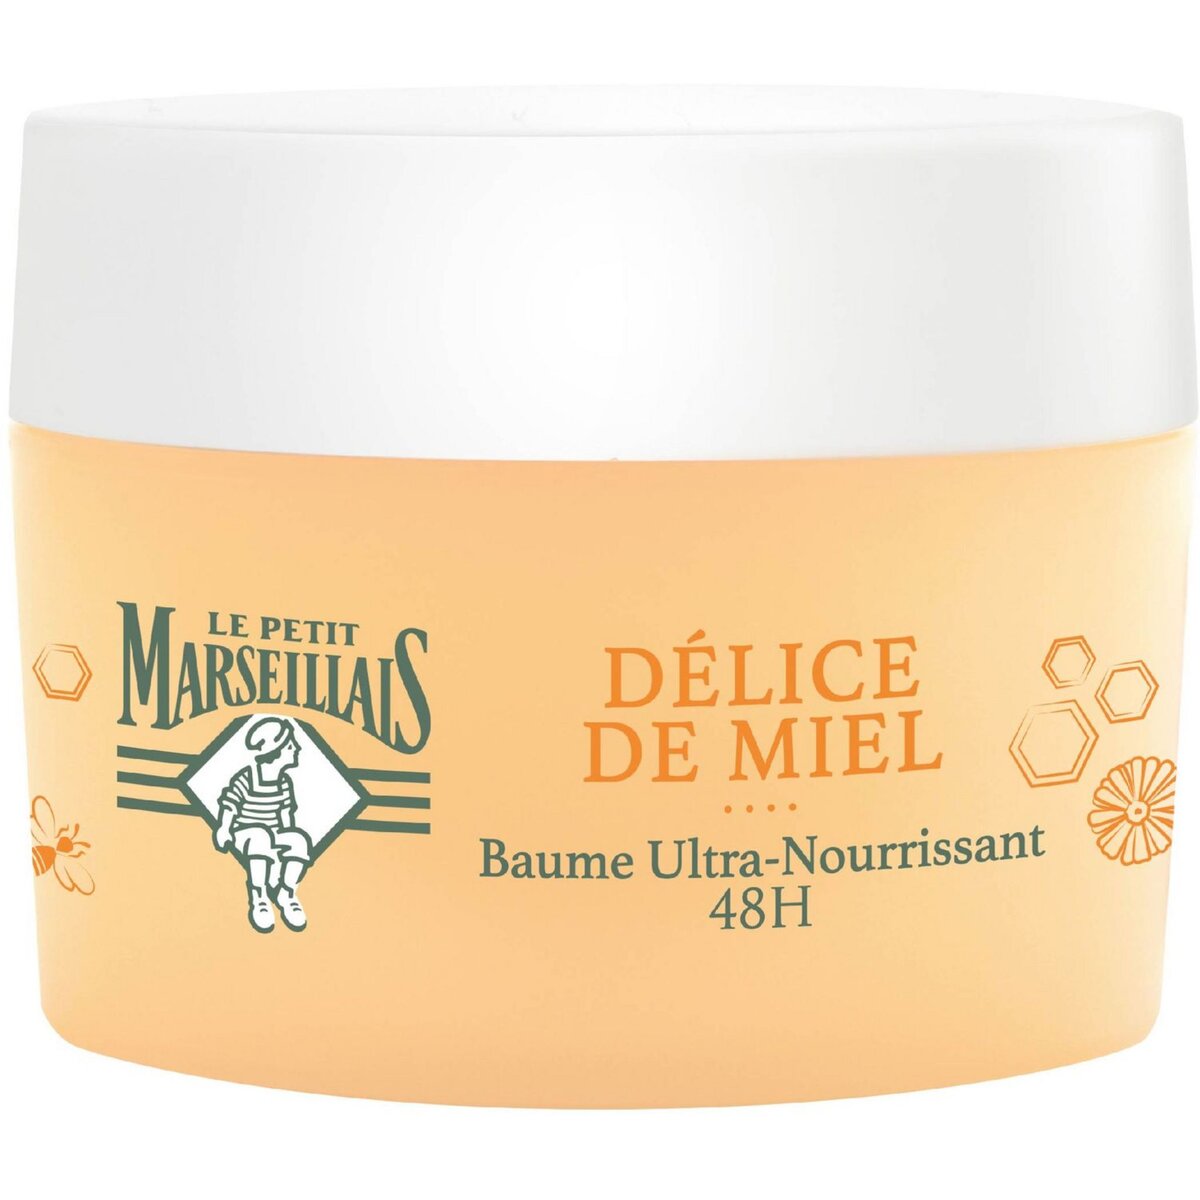 LE PETIT MARSEILLAIS Délice de Miel baume ultra-nourrissant au miel de Haute-Provence 50ml